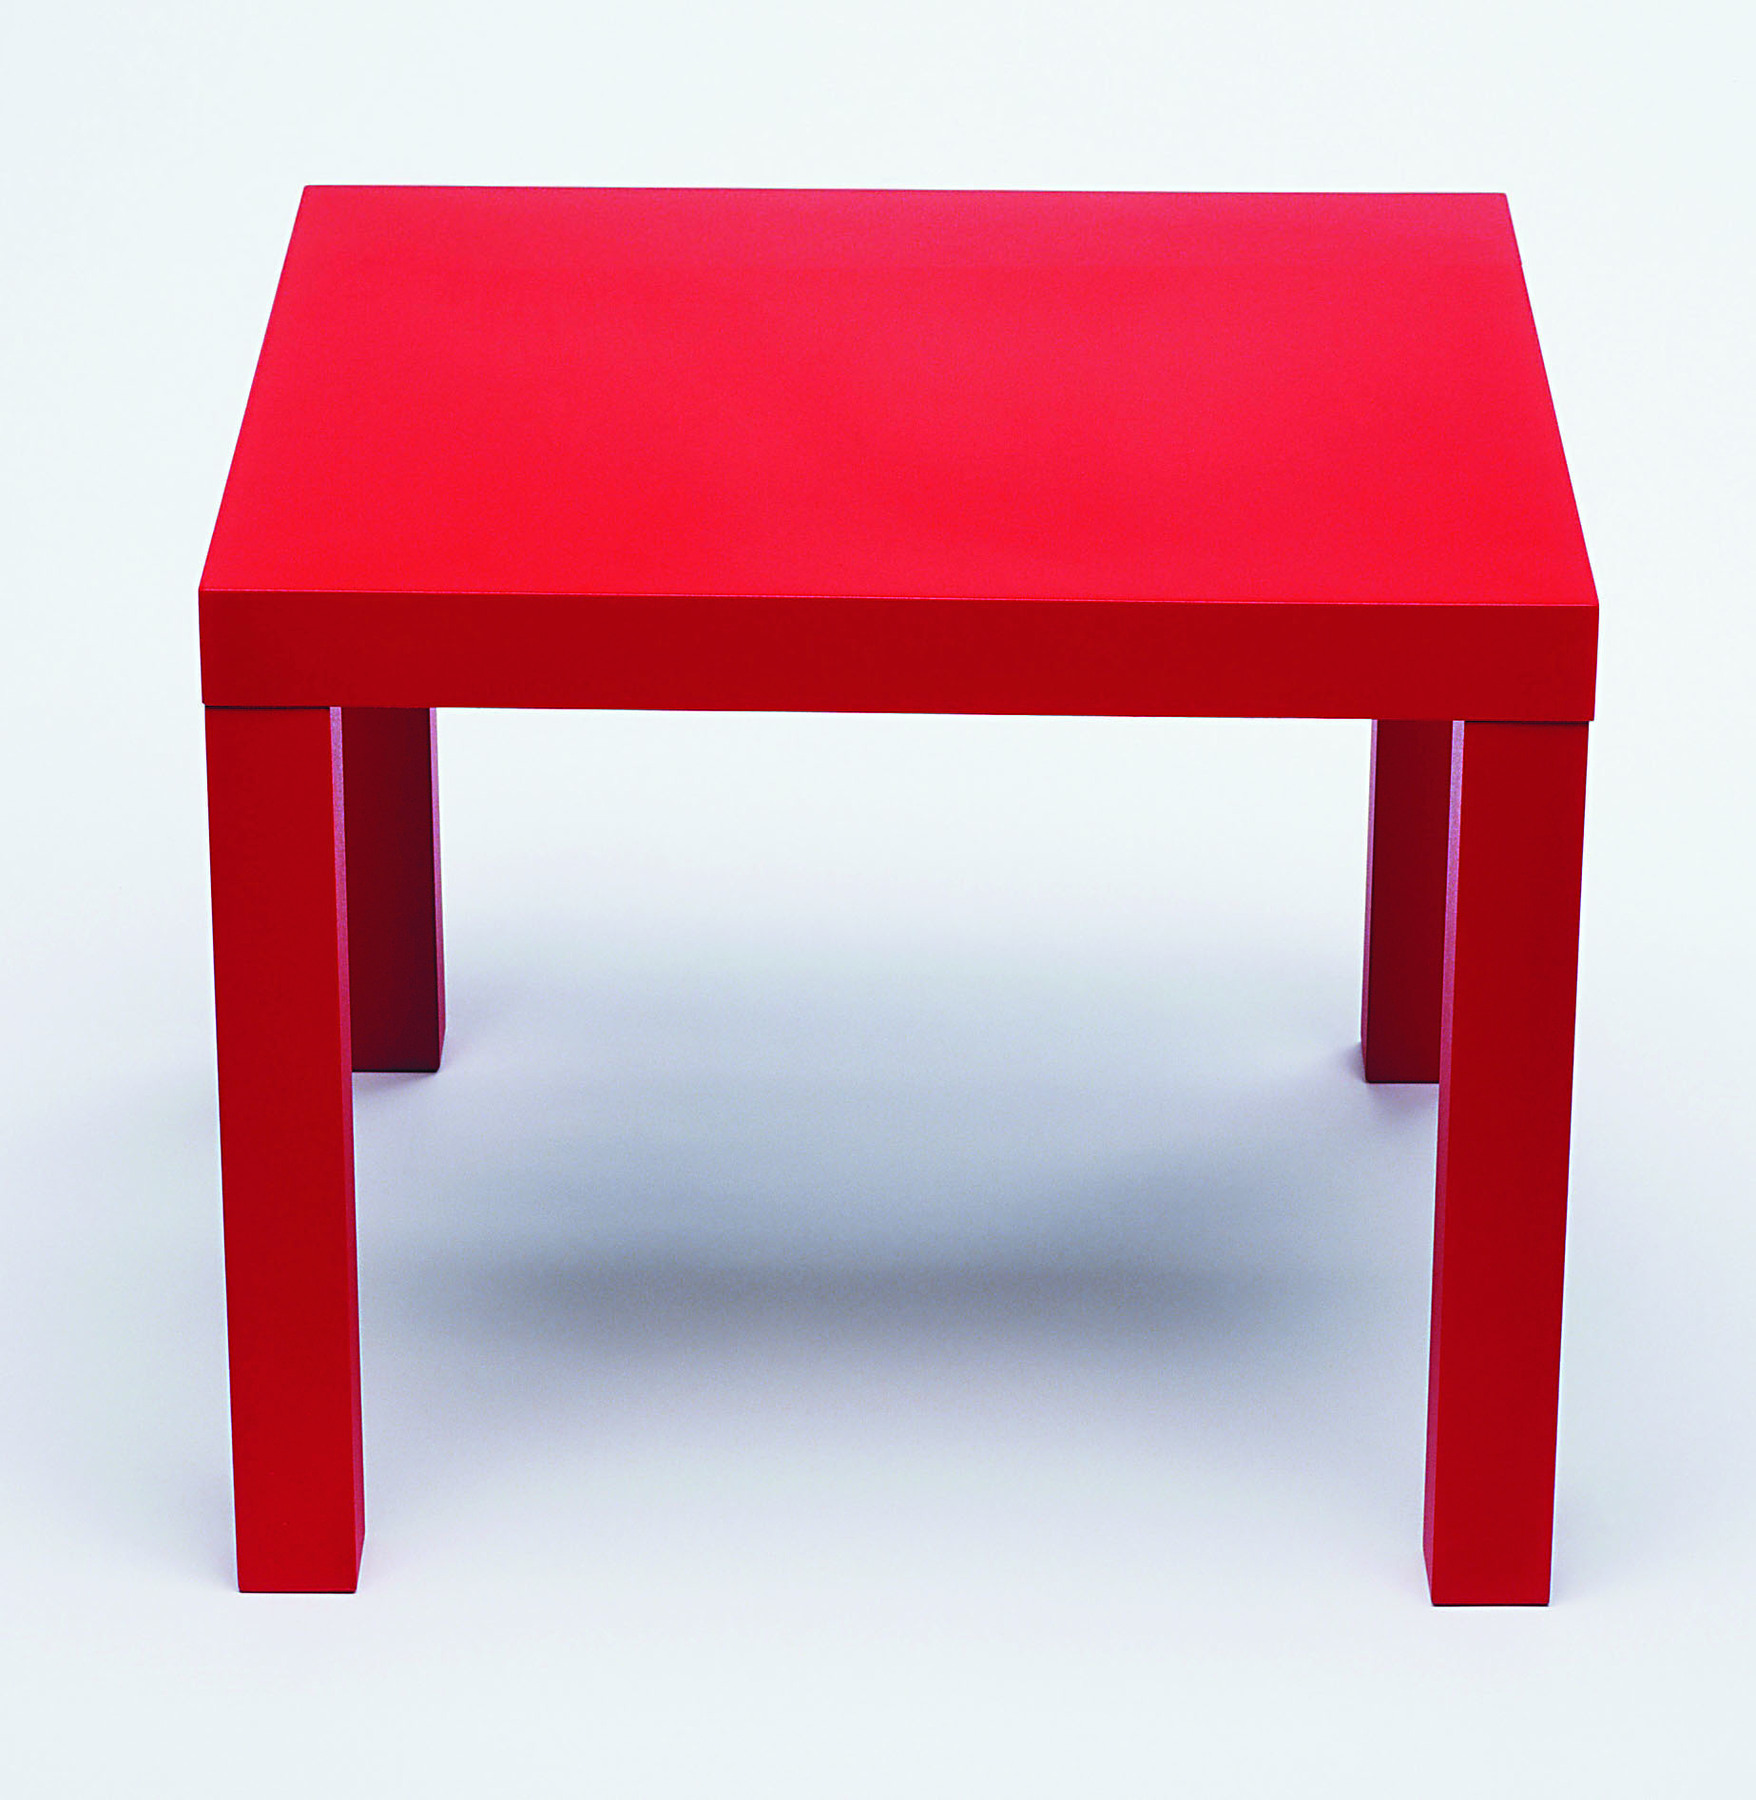 Fotografia. Mesa de tampo retangular para 4 pessoas. O tampo e os pés da mesa são vermelhos.